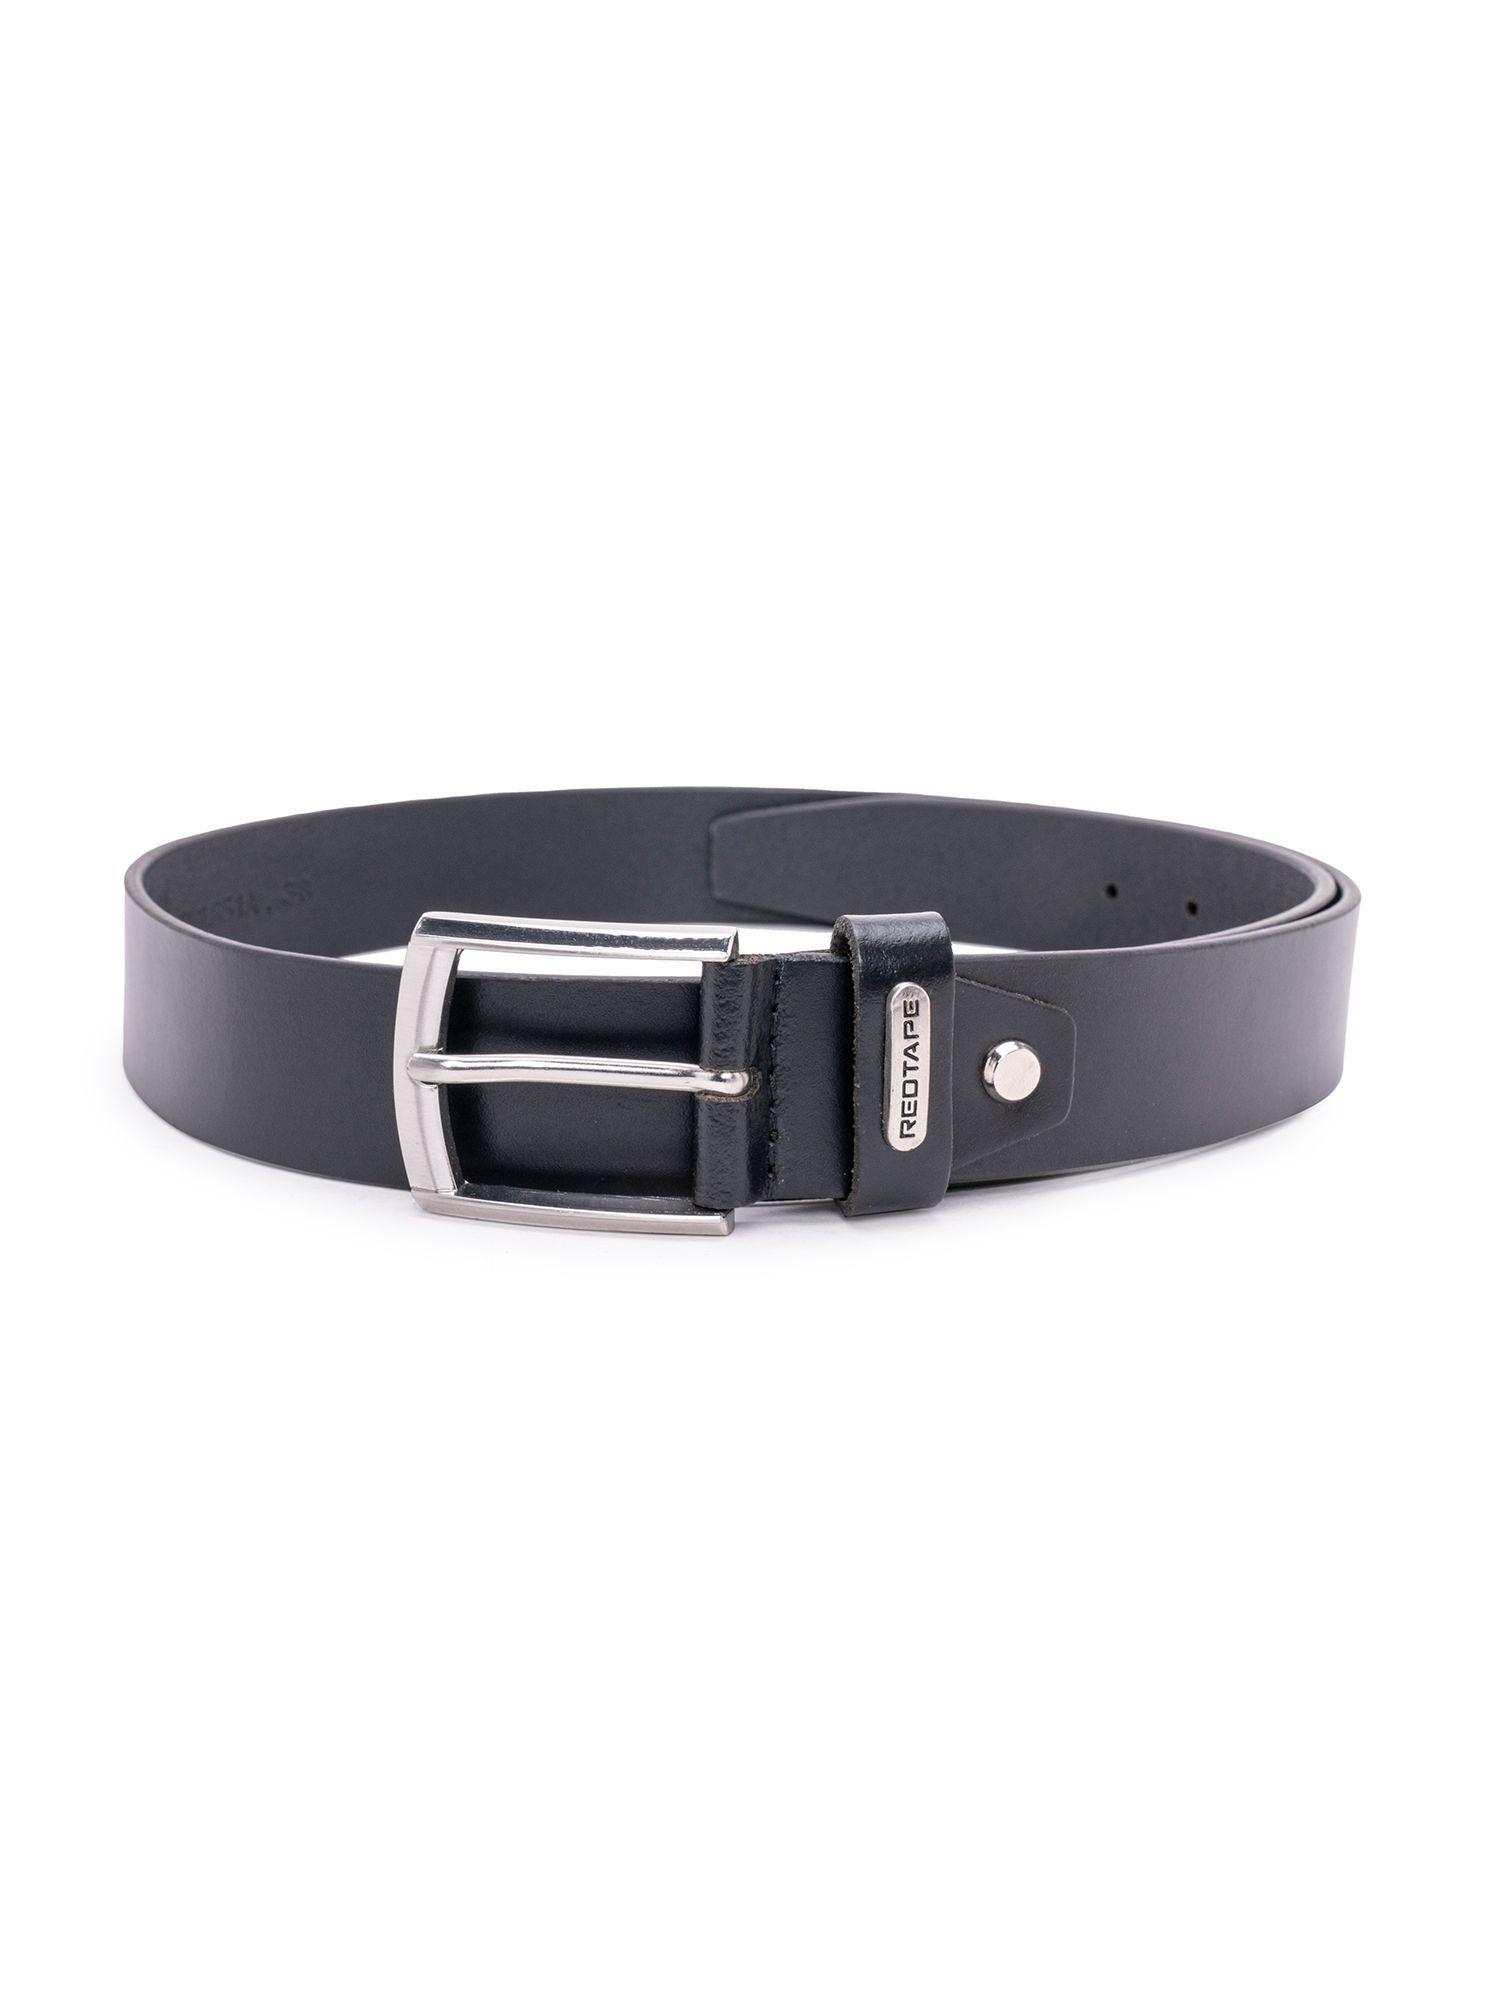 mens-black-leather-formal-belt